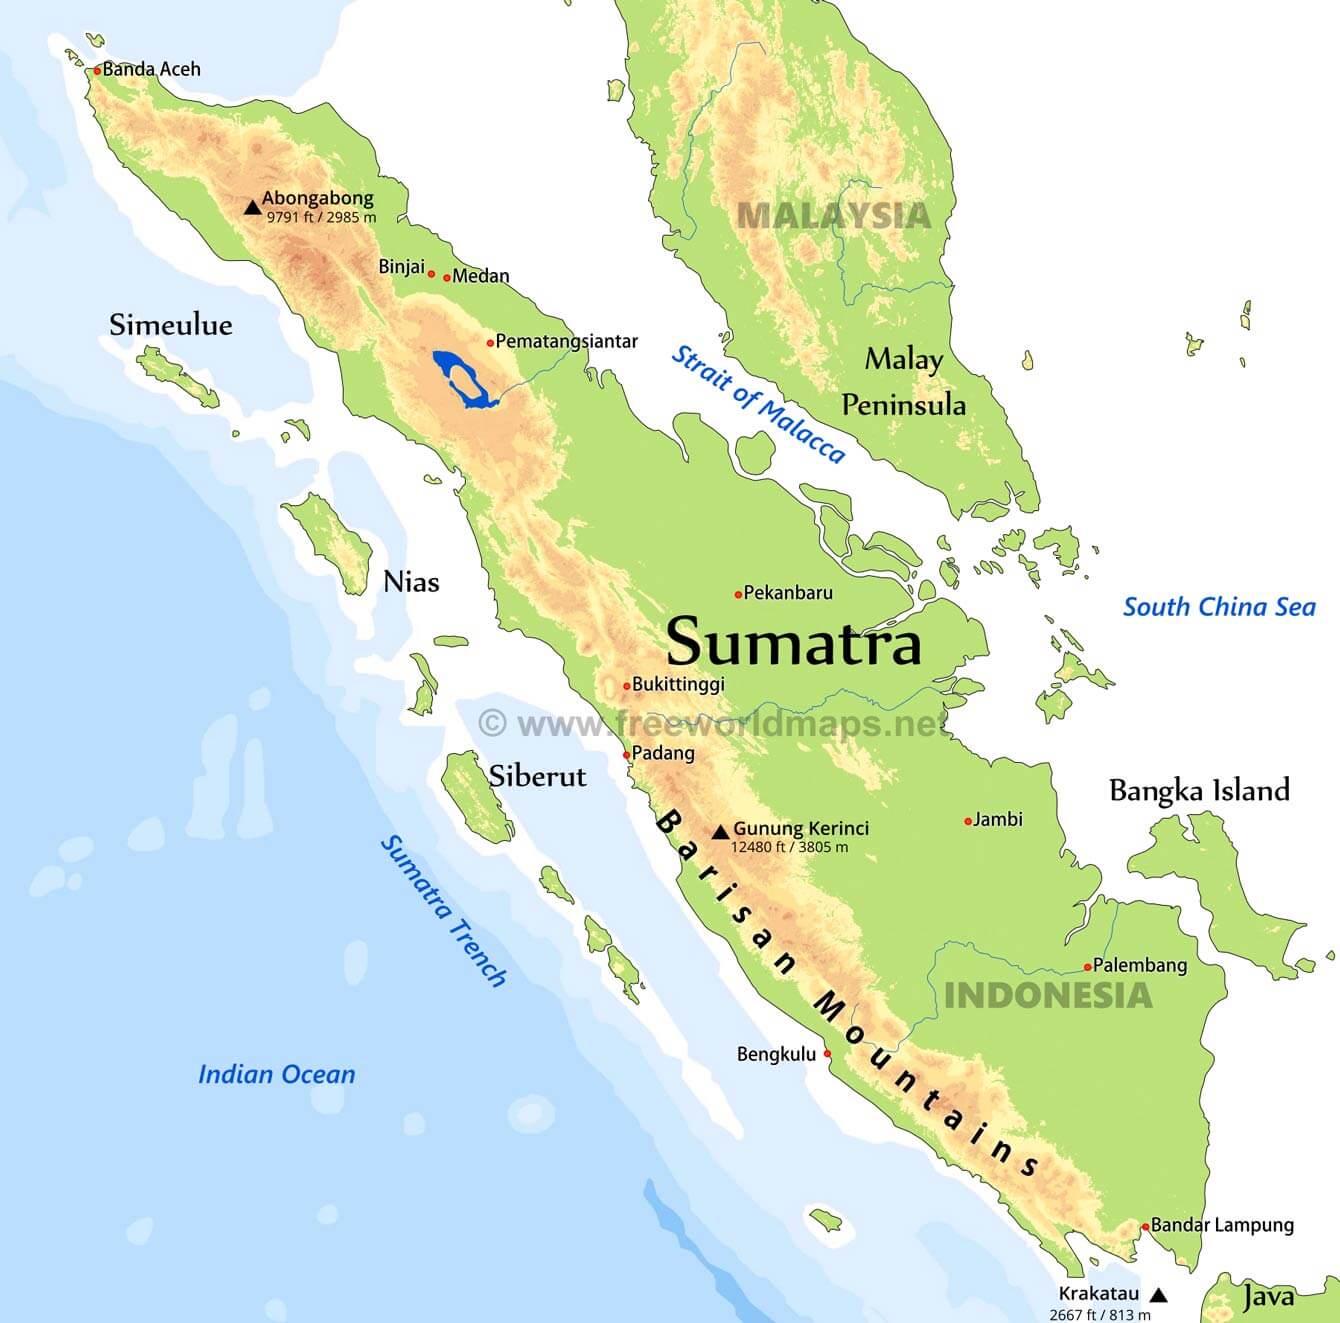  Sumatra  La gu a de Geograf a